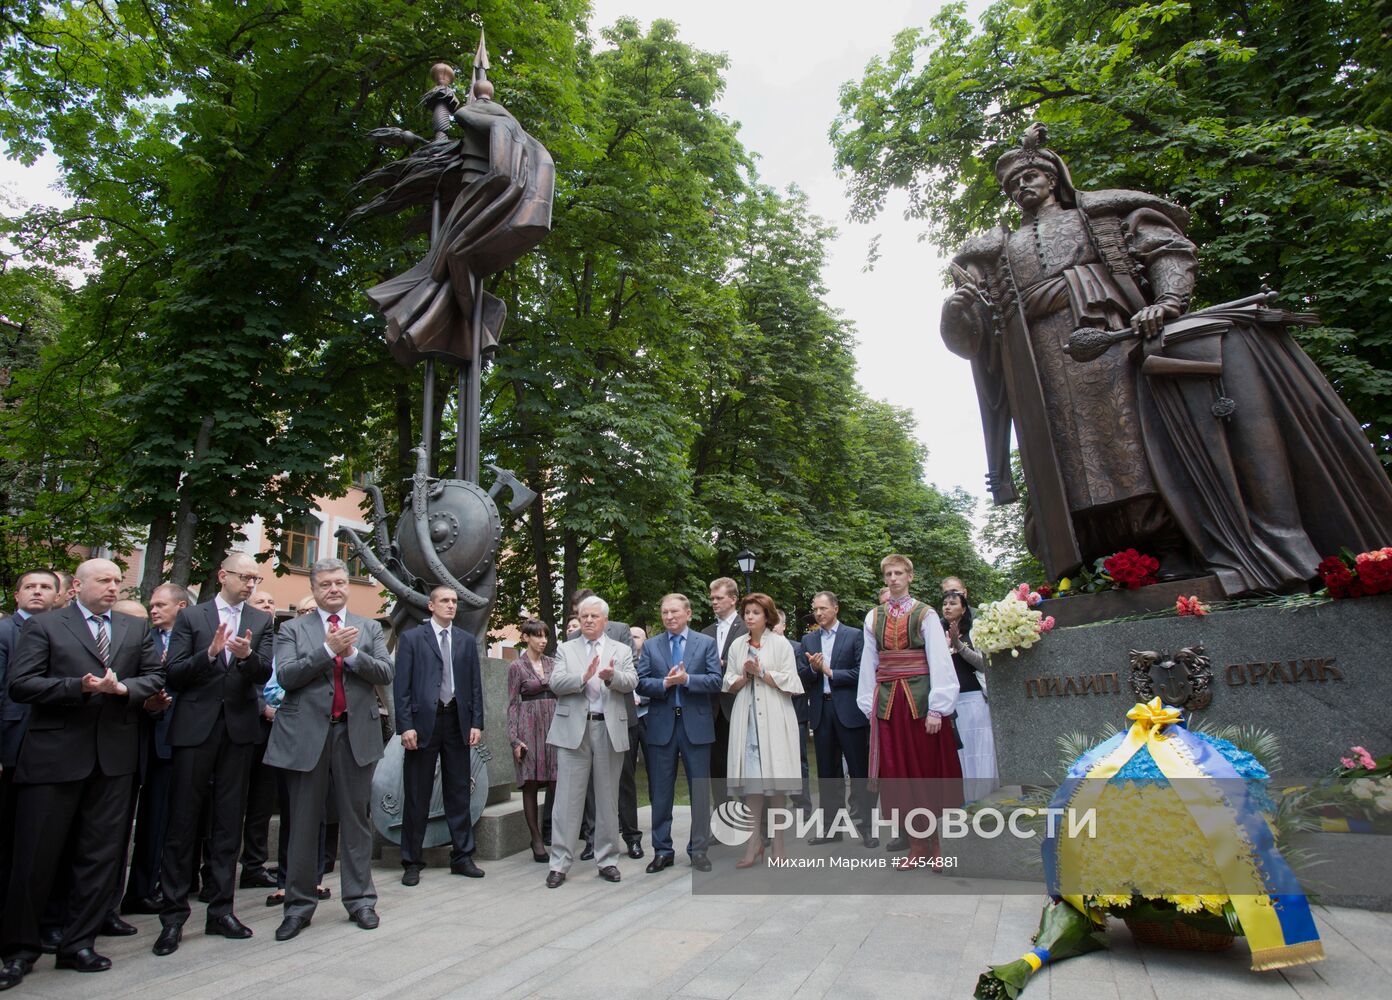 Руководители Украины возложили цветы к памятнику создателю первой украинской конституции